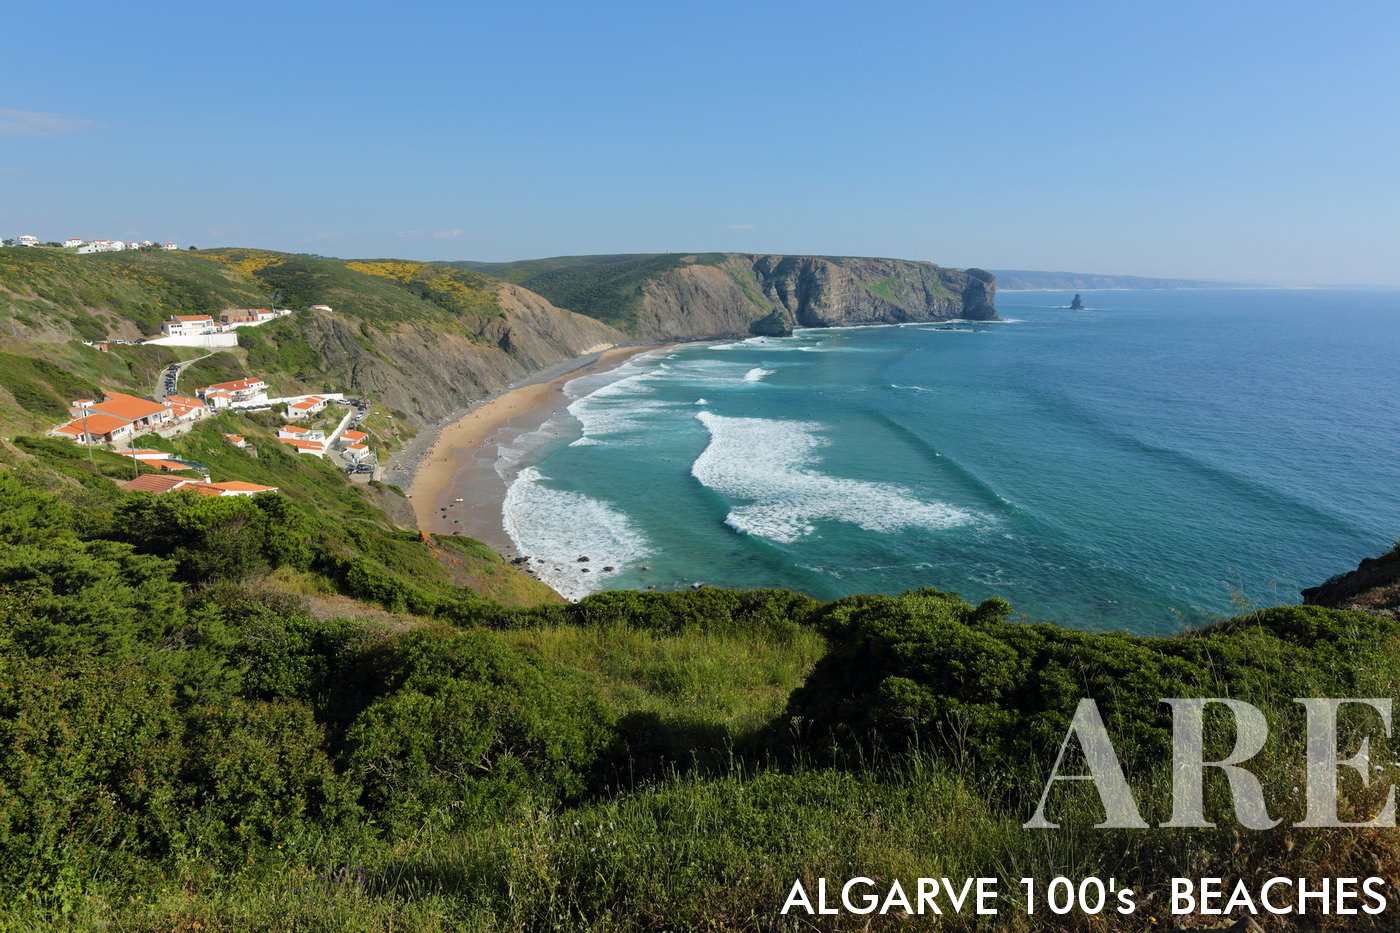 En el Parque Natural del Suroeste Alentejano y Costa Vicentina, Portugal, la playa de Arrifana emerge como un lugar popular para practicar surf. Una vista de norte a sur desde lo alto de los acantilados revela la belleza de este paraje natural.